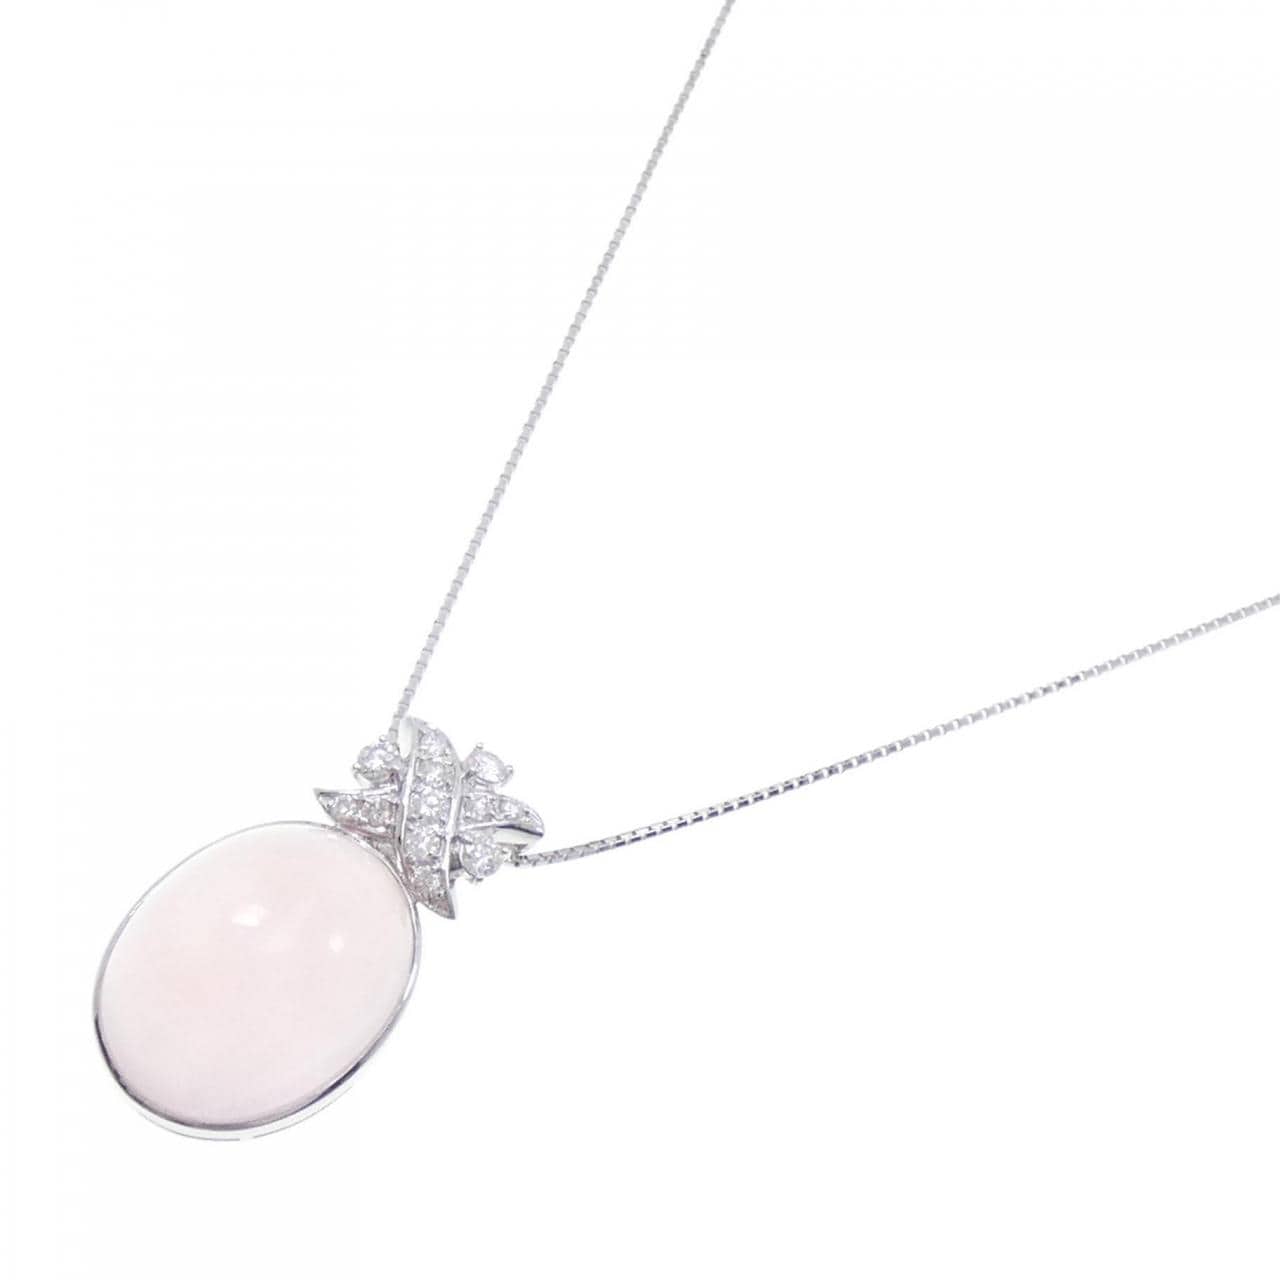 K18WG Rose Quartz Necklace 34.01CT